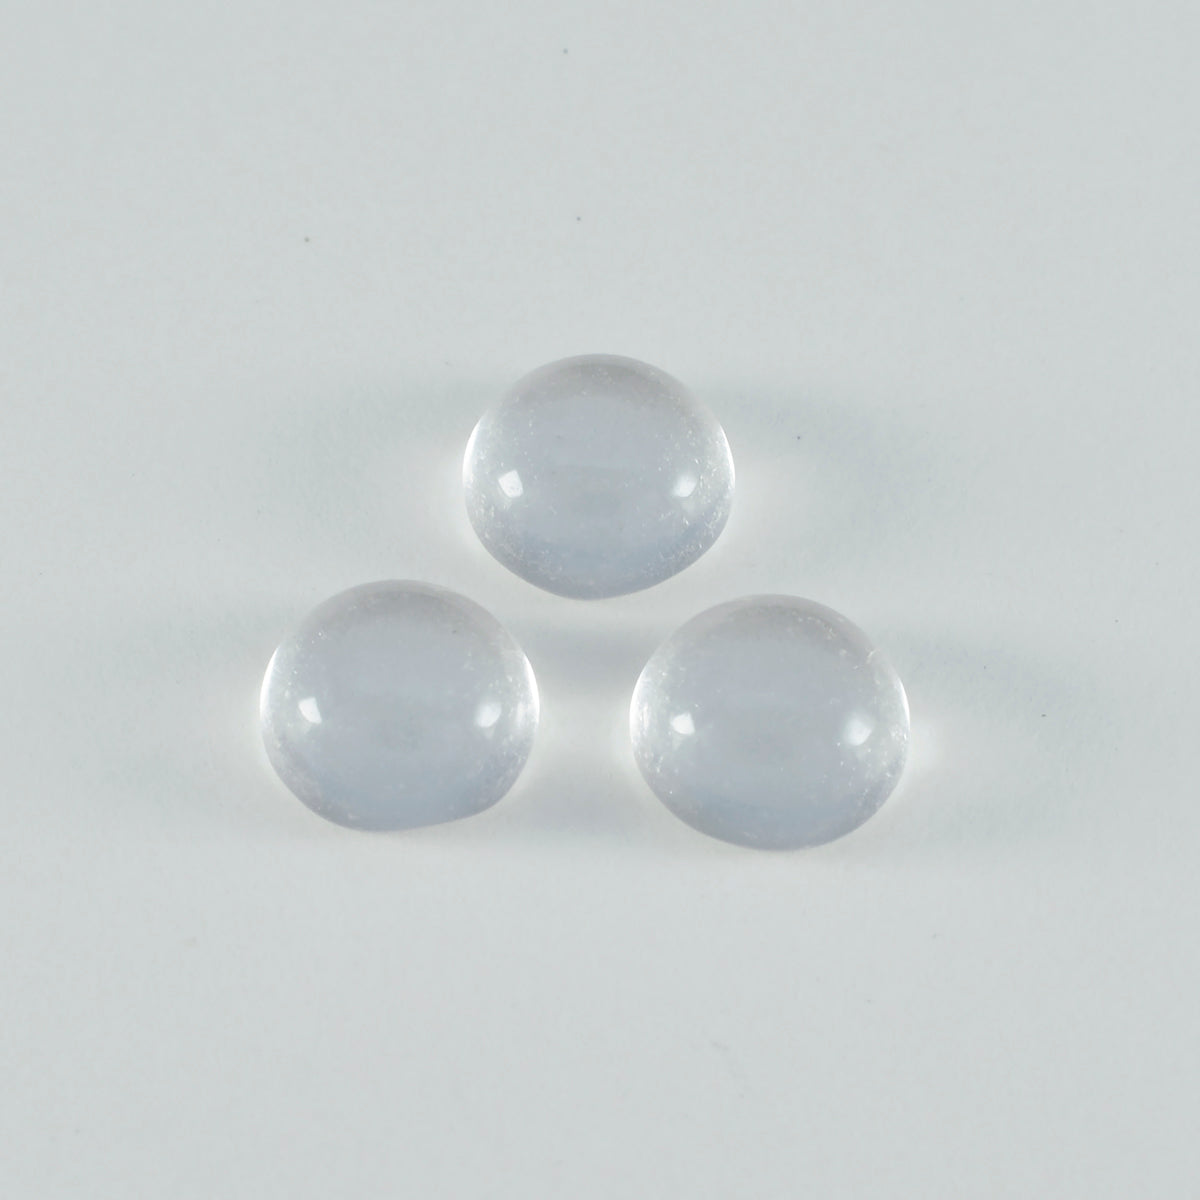 riyogems 1pc ホワイト クリスタル クォーツ カボション 7x7 mm ラウンド形状 a+1 品質の宝石